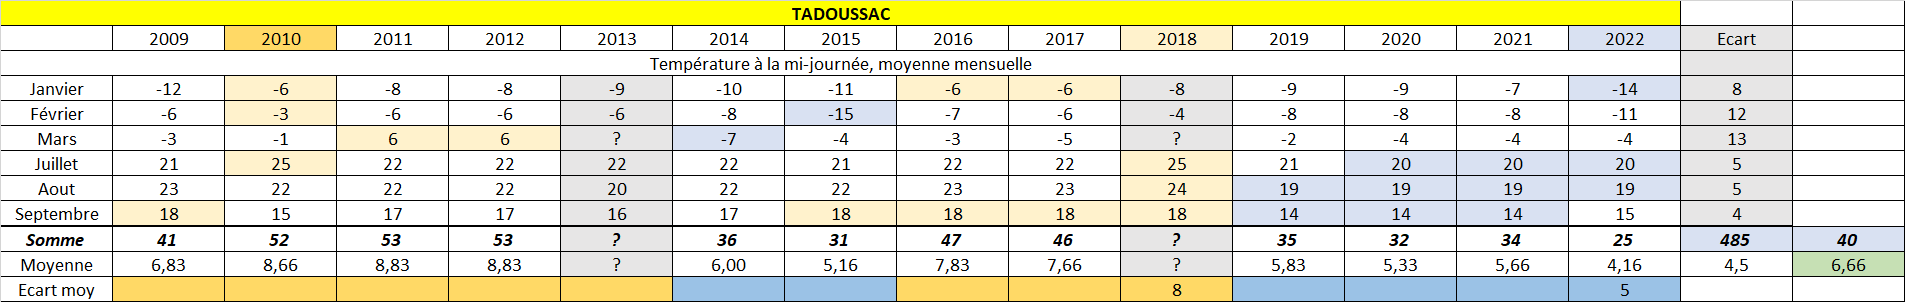 Tadoussac